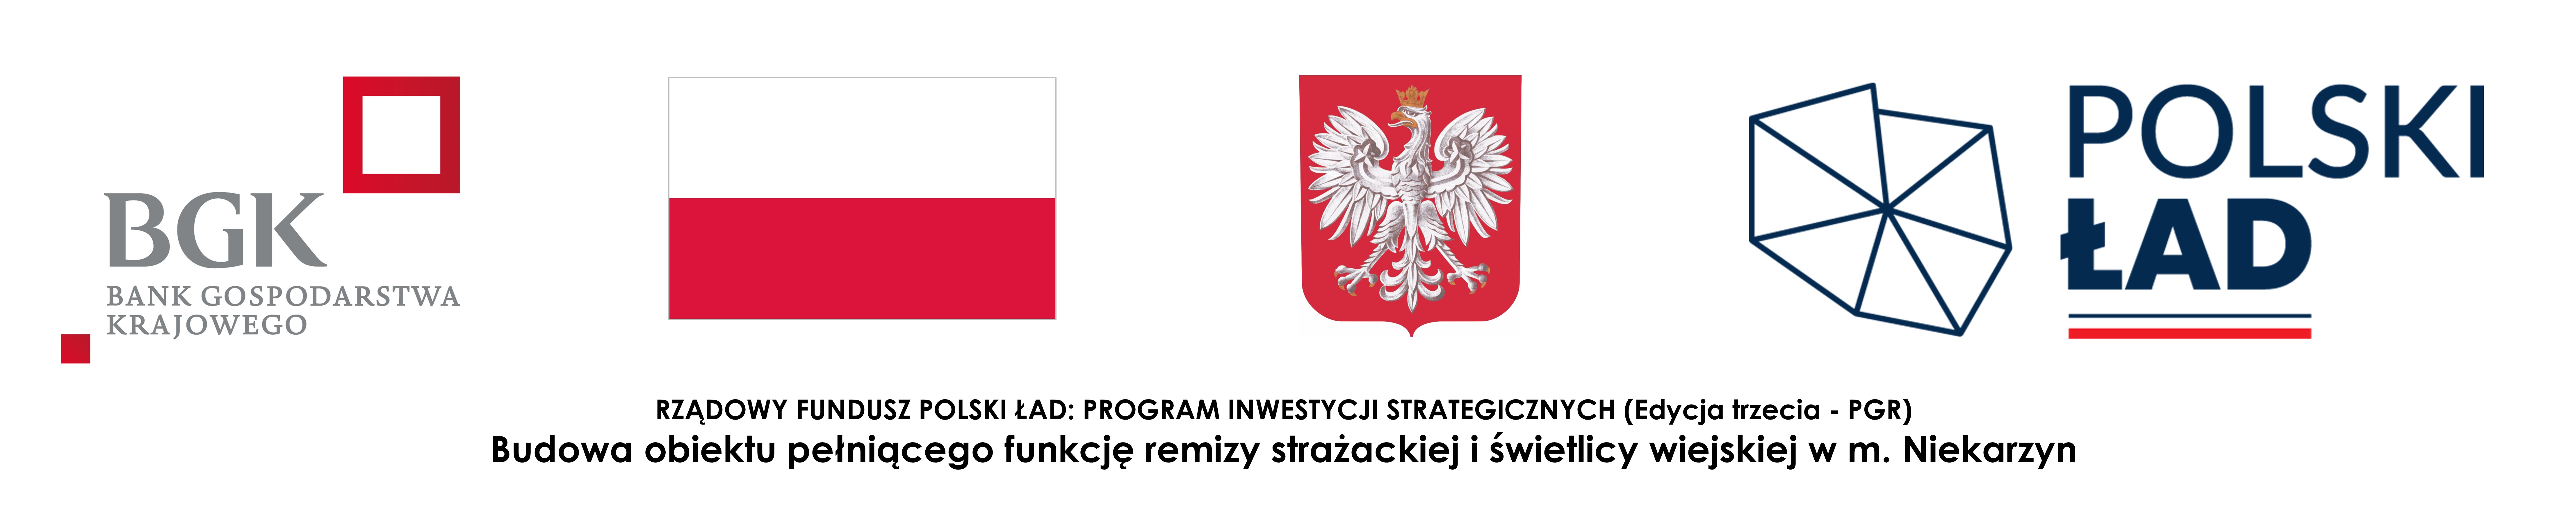 Pasek Logotypów Polski Ład